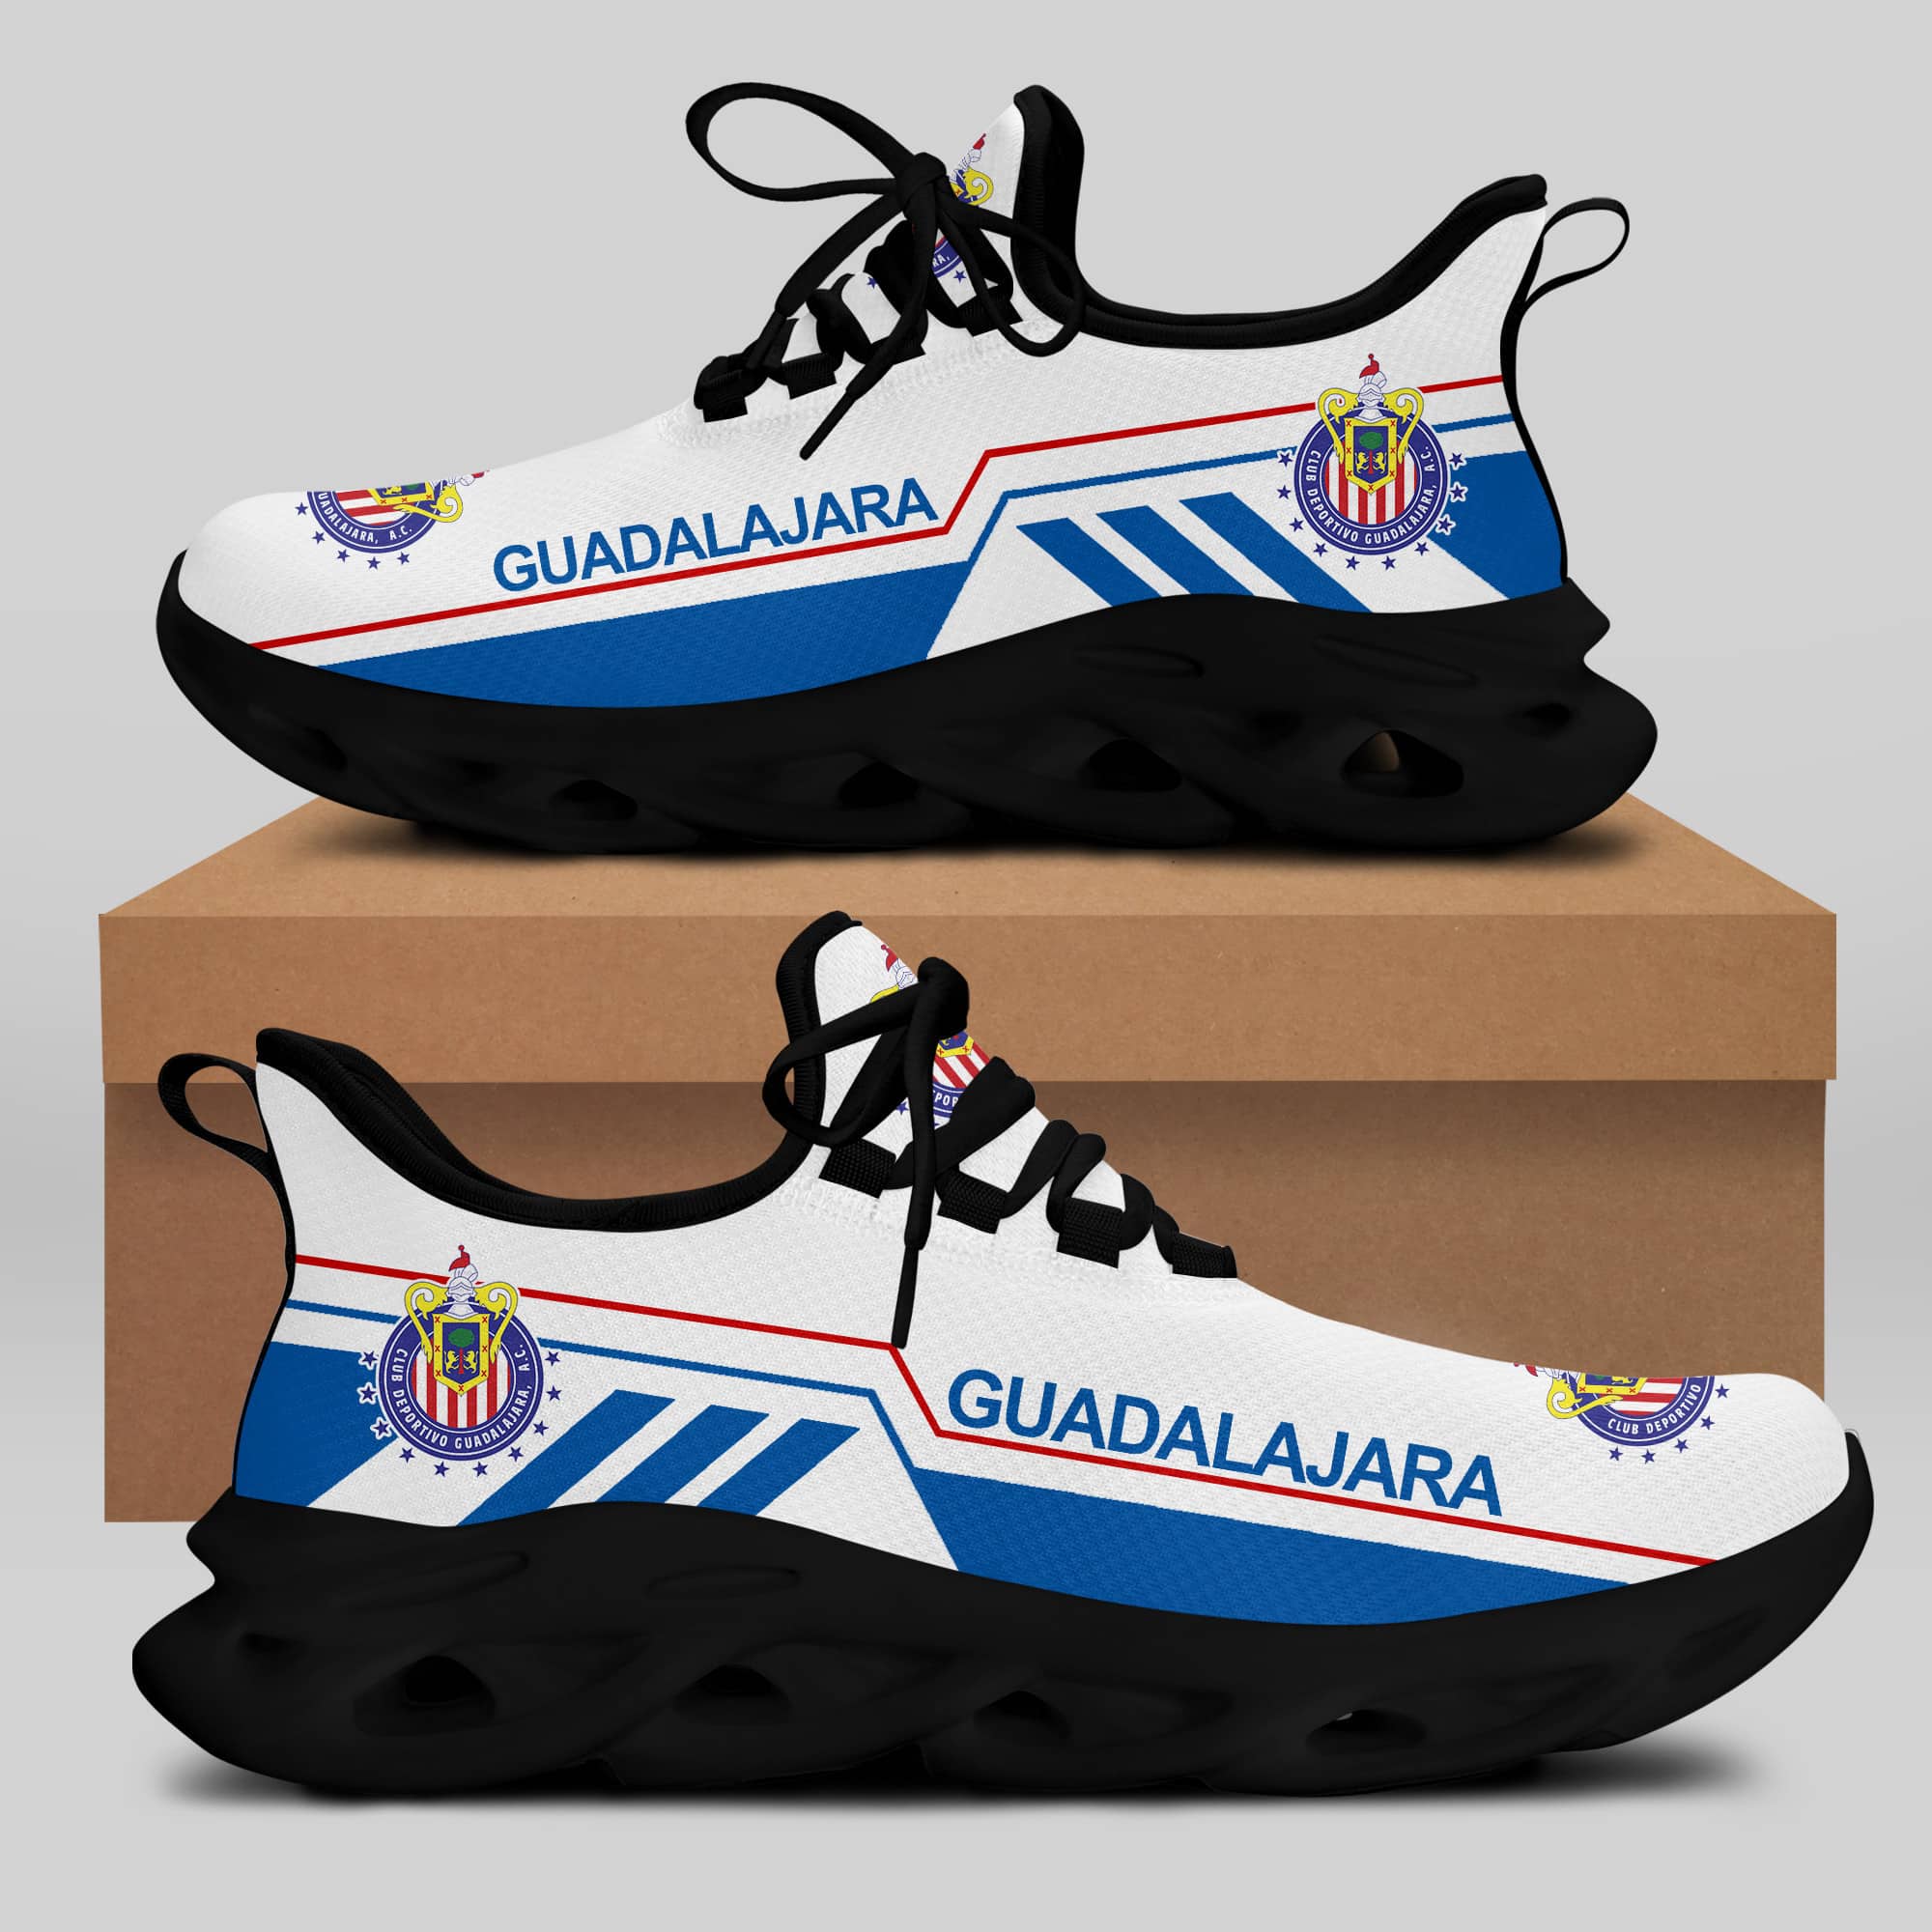 C.D. Guadalajara Running Shoes Max Soul Shoes Sneakers Ver 11 2